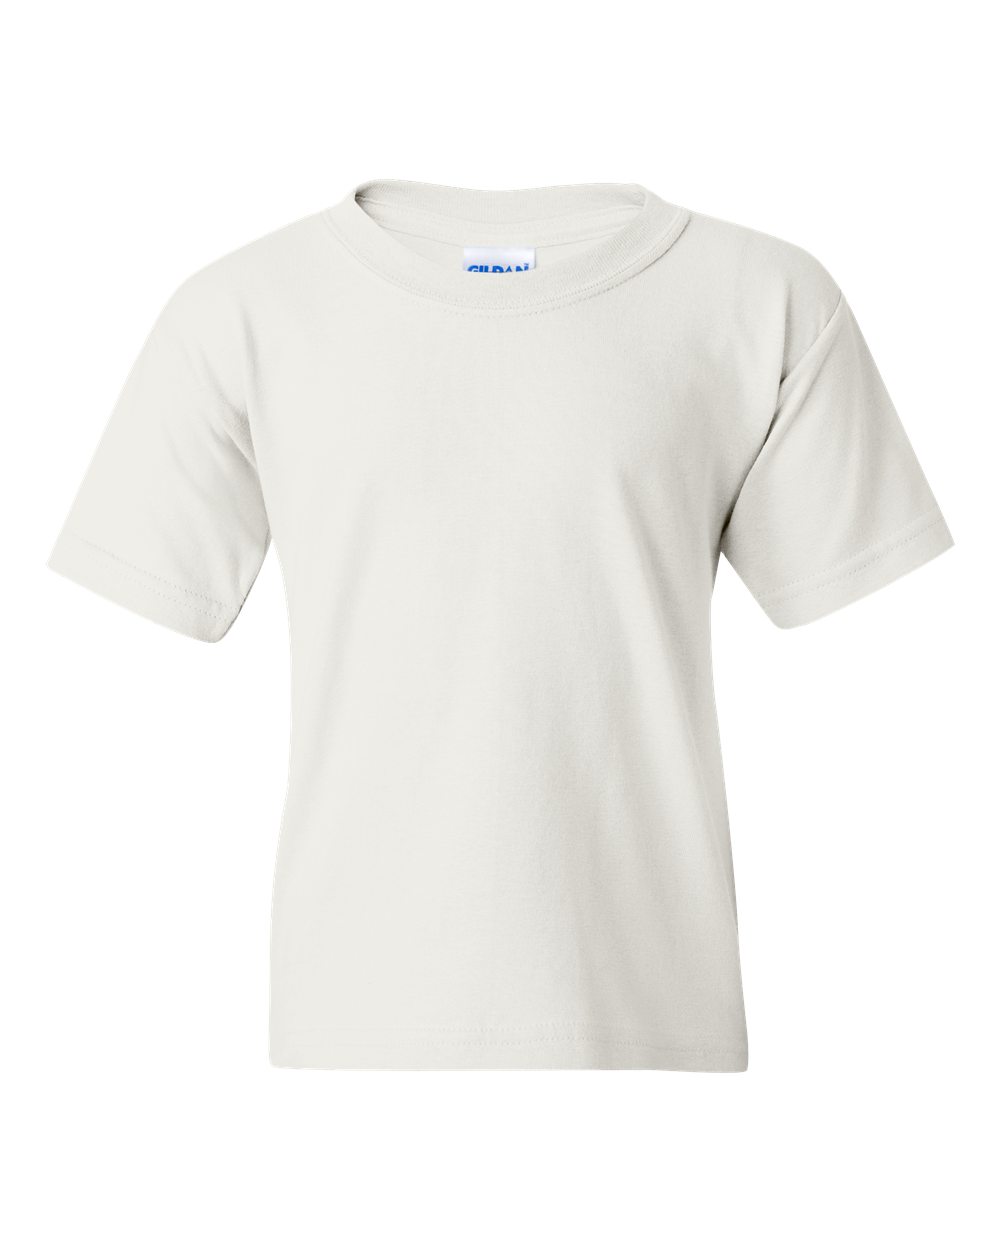 40 Bulk Lot Gildan 5000B Heavy Cotton WHITE Kids Youth Blank Shirts XS S M L XL